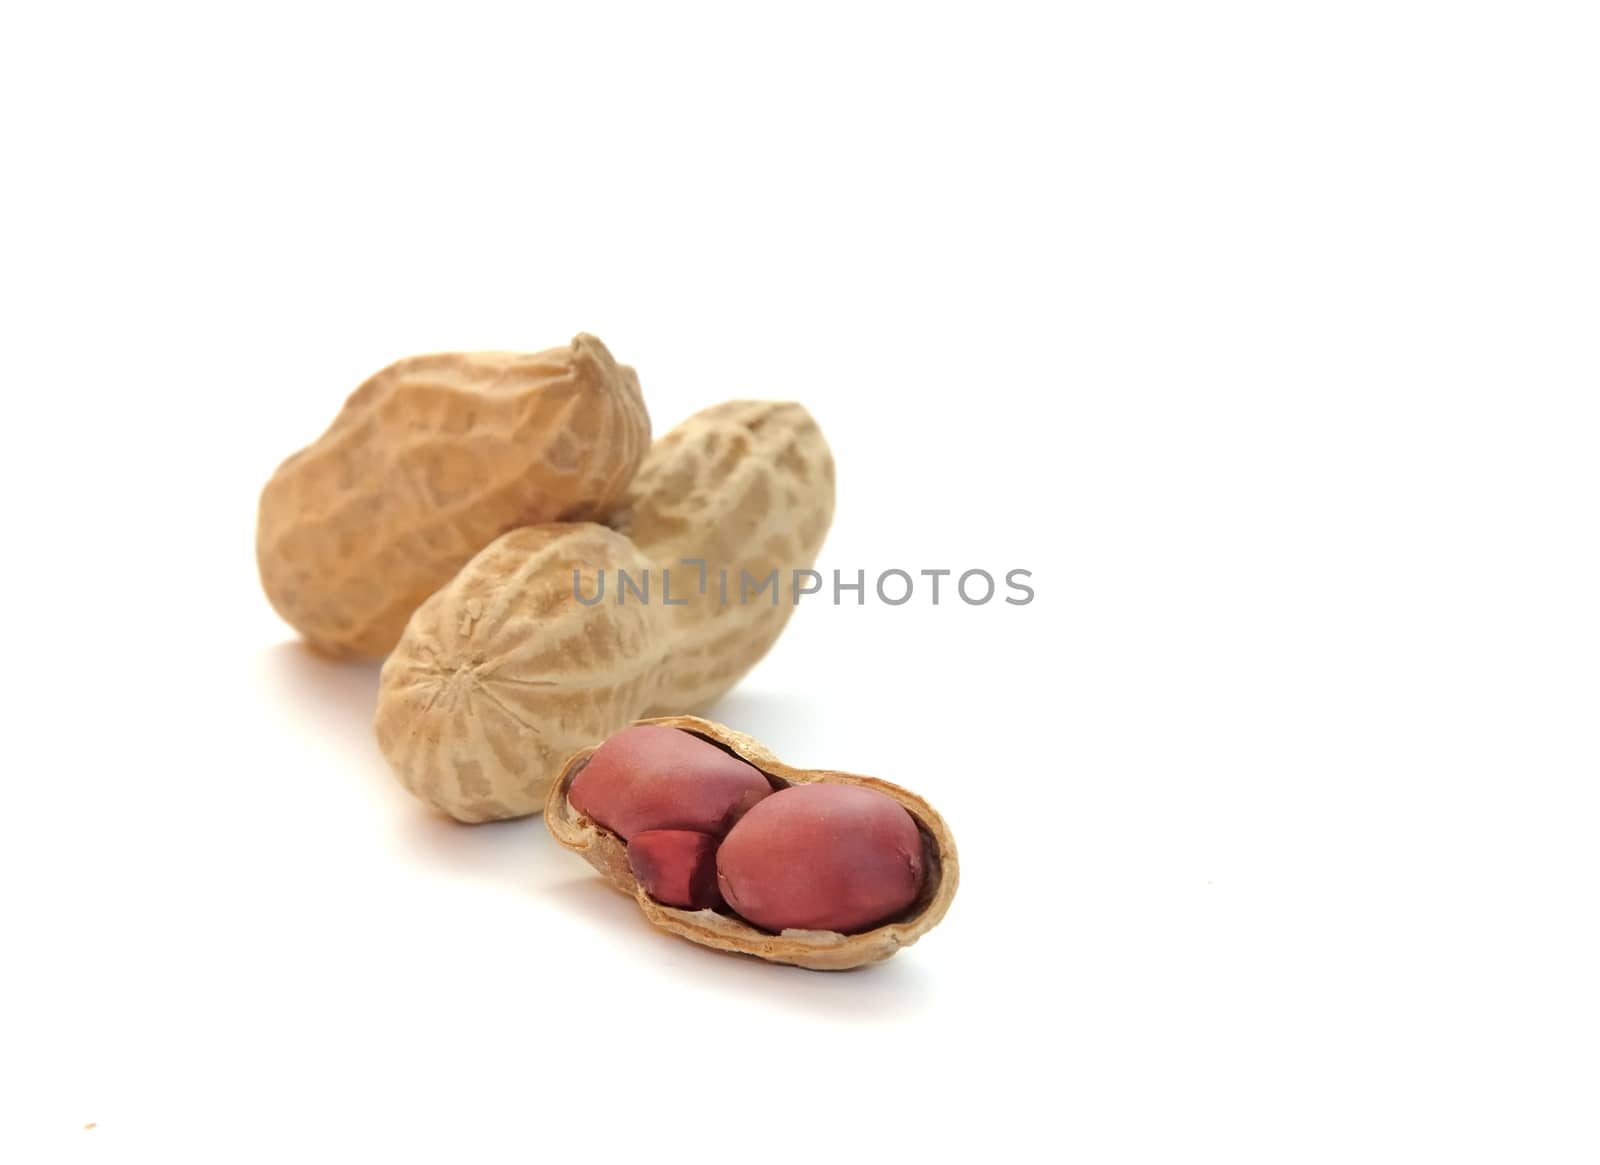 peanuts by kimmik